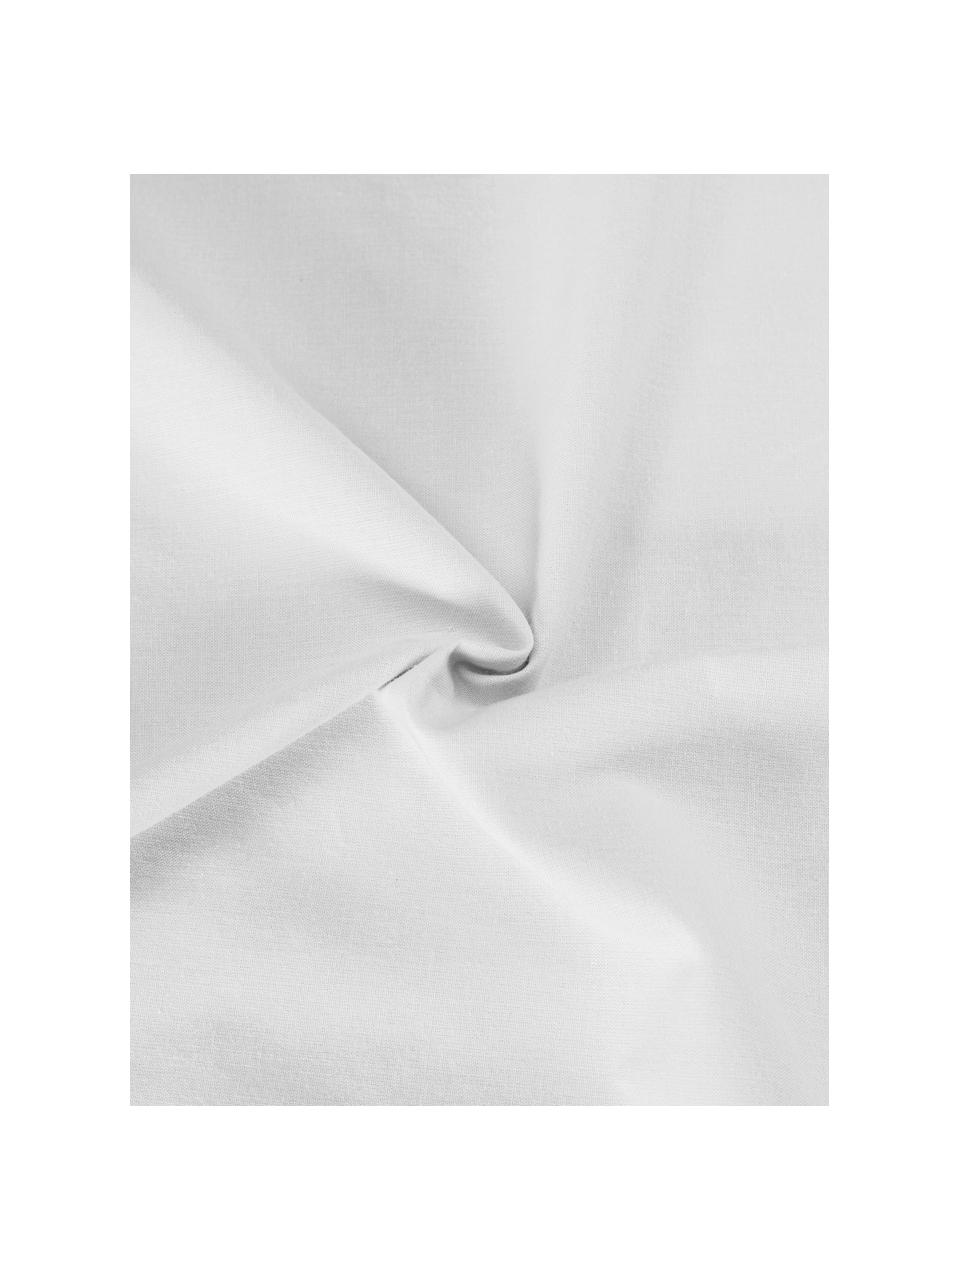 Housse de couette plumetis blanc Aloide, Blanc, larg. 200 x long. 200 cm